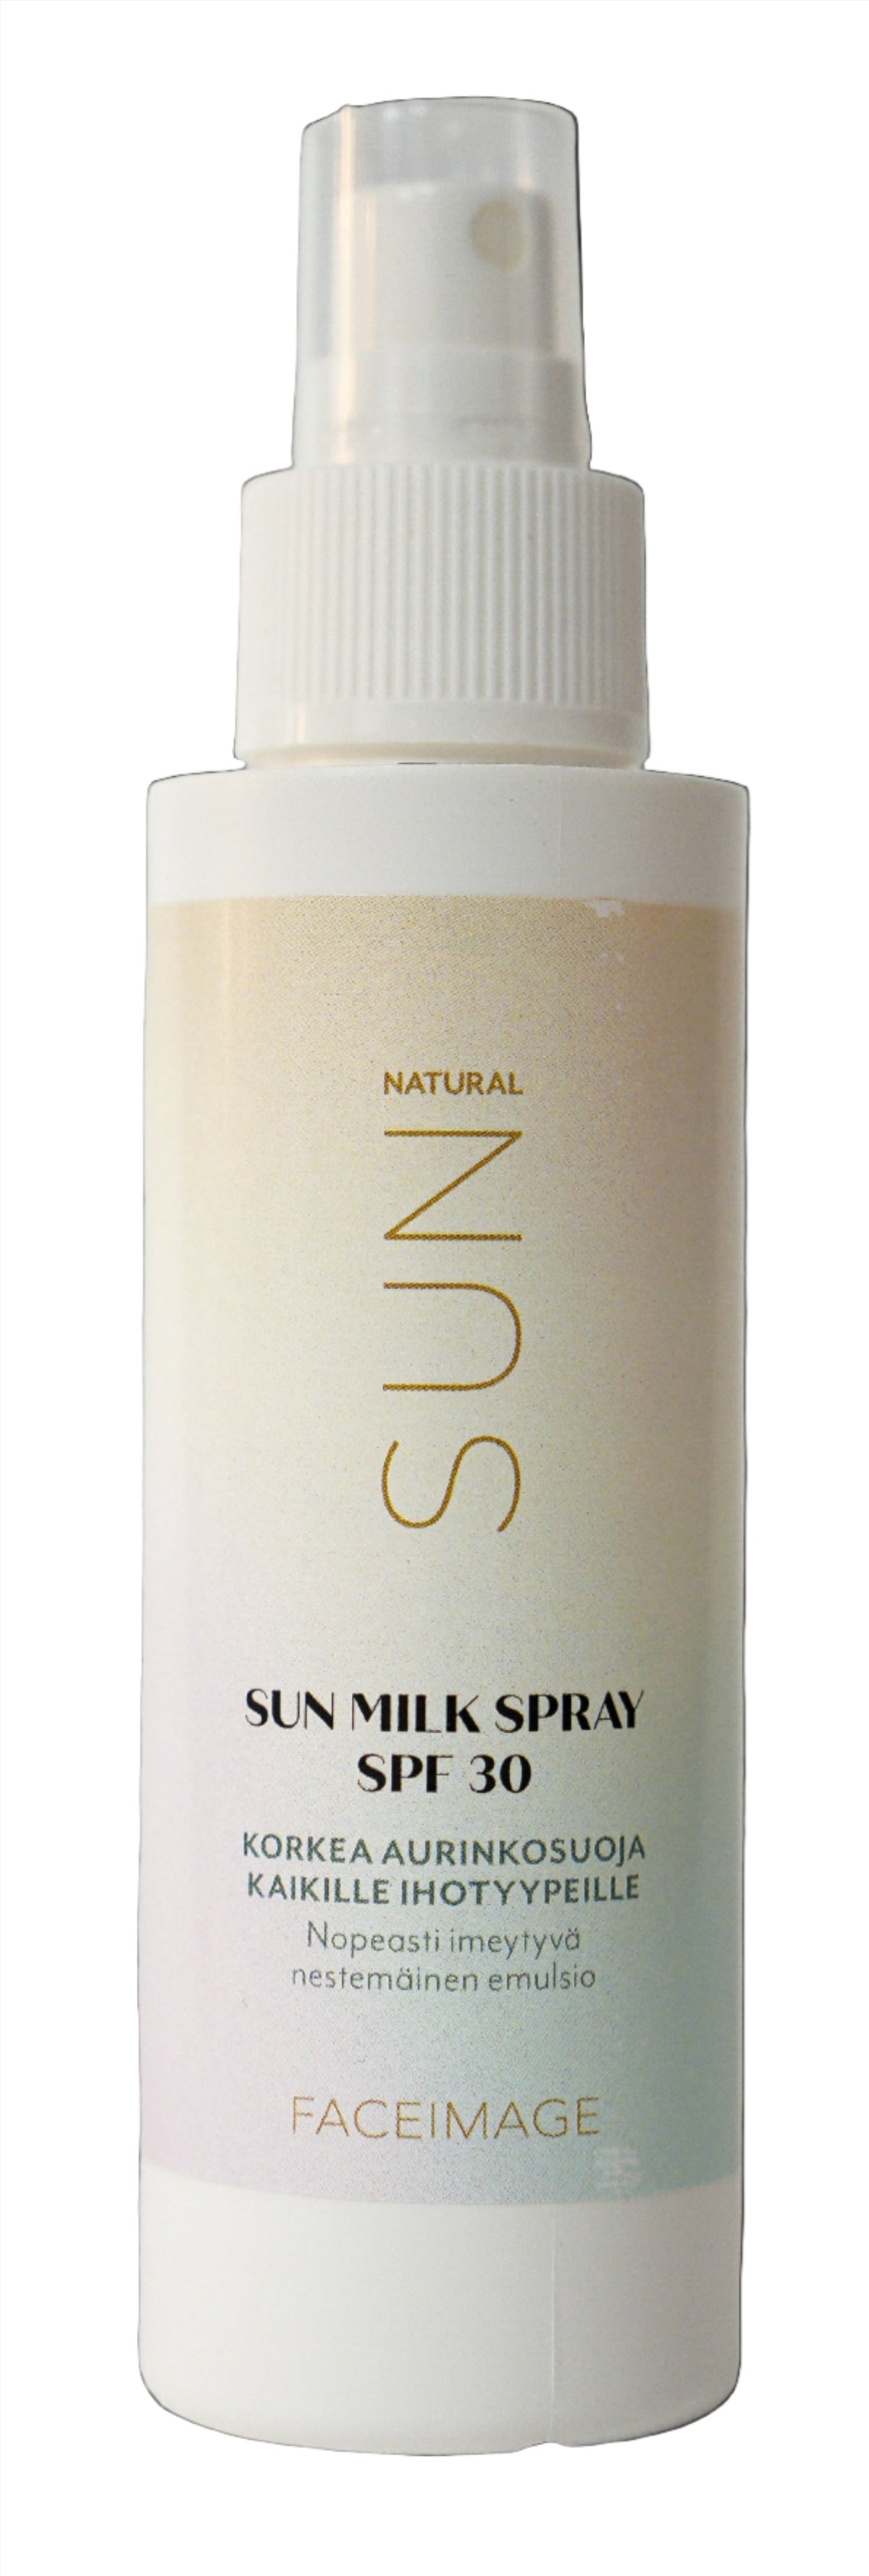 Faceimage Sun Milk Spray SPF 30 - Aurinkosuoja 100 ml